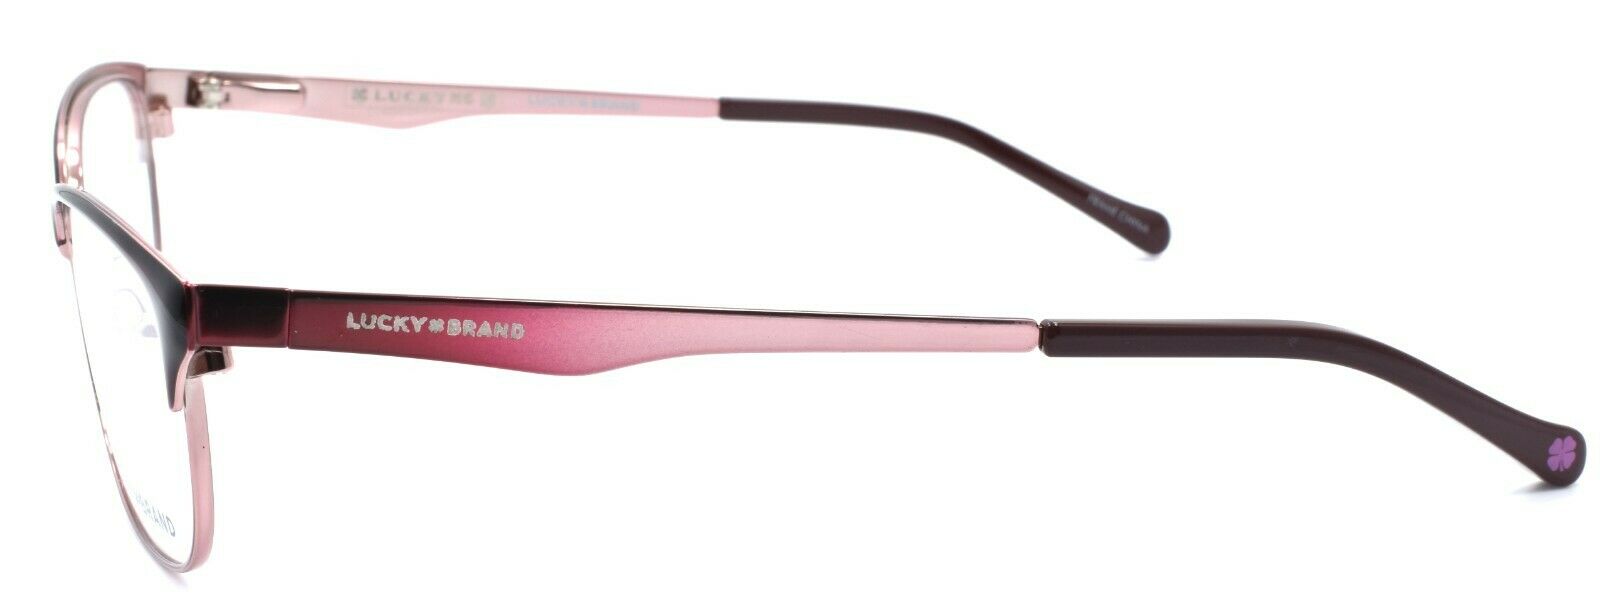 3-LUCKY BRAND D703 Eyeglasses Frames SMALL 49-16-130 Pink + CASE-751286282191-IKSpecs